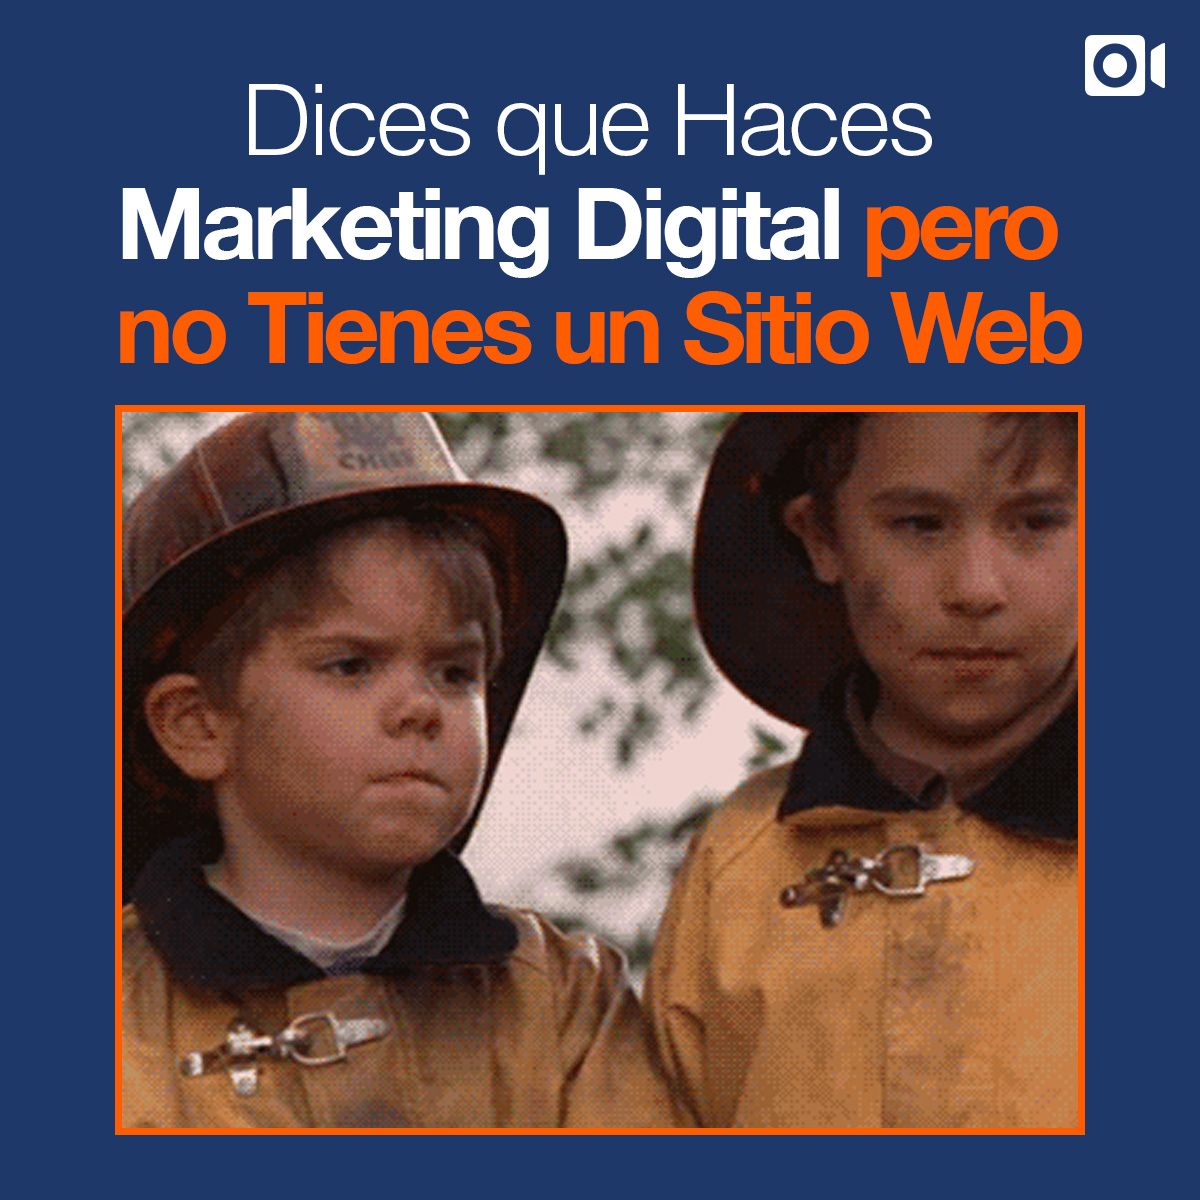 Dices que Haces Marketing Digital, Pero no Tienes un Sitio Web